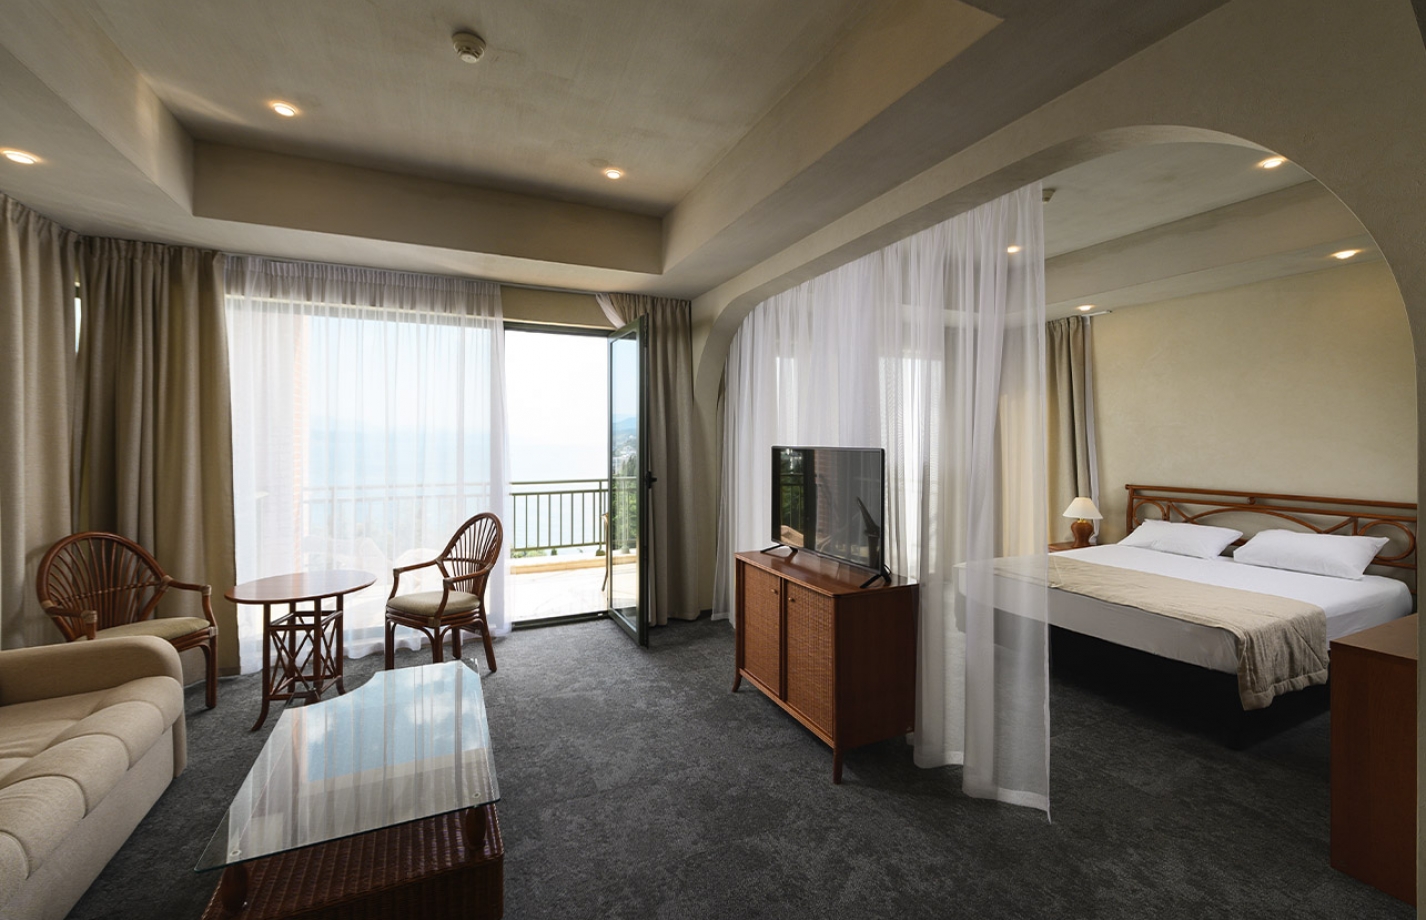 Просторный однокомнатный номер с джакузи. Условно разделен декоративной портьерой на гостиную и спальню в отеле More Spa & Resort

